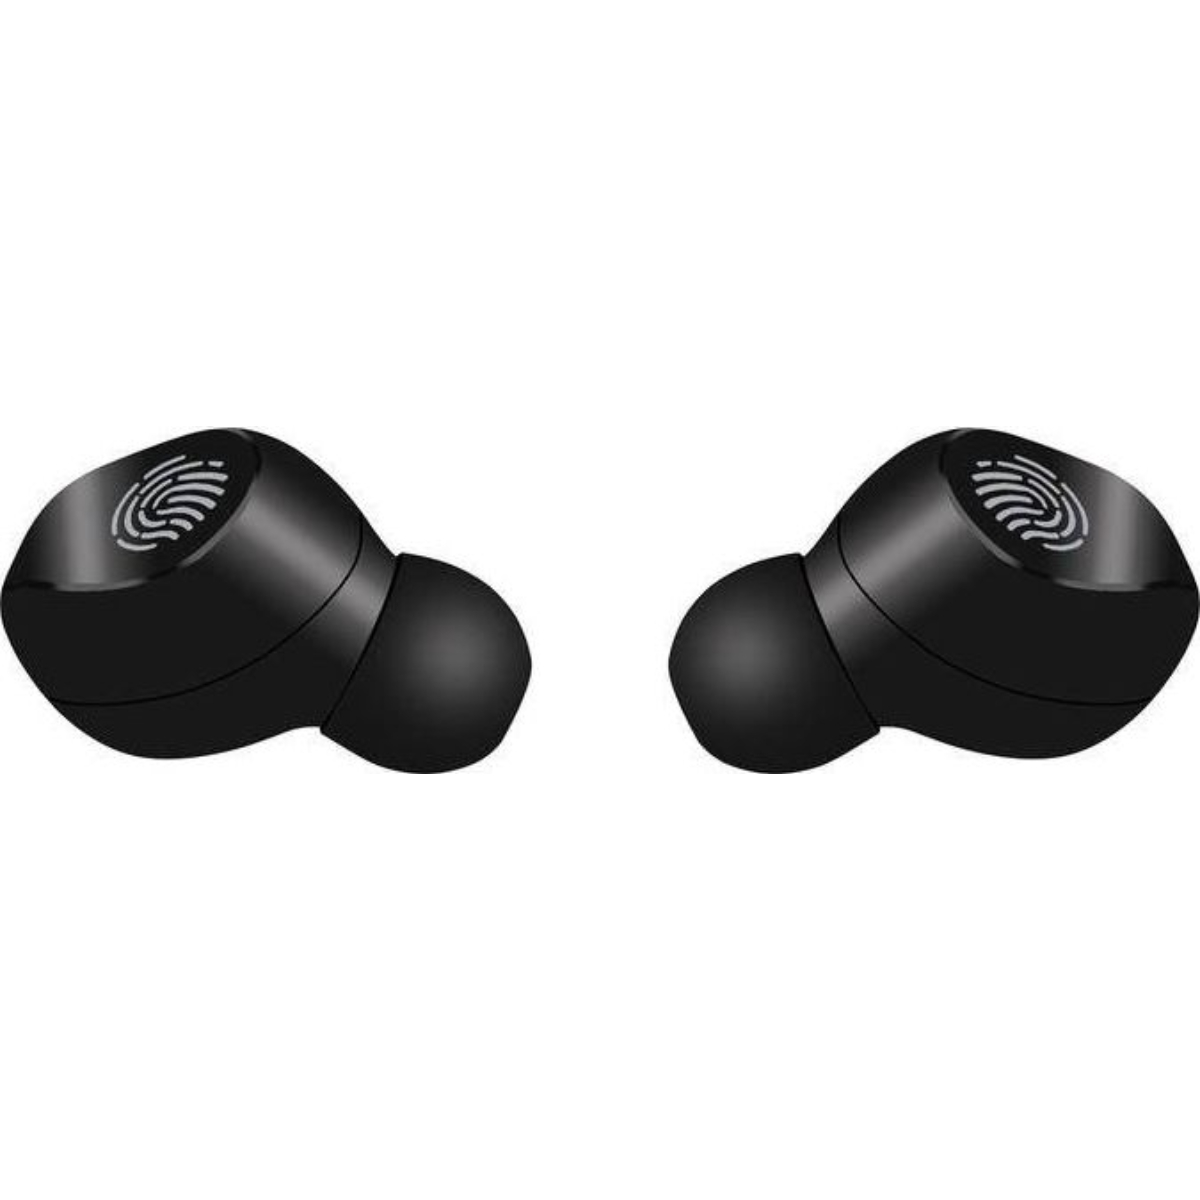 ISO TRADE S16154, In-ear Schawrz Bluetooth-Kopfhörer